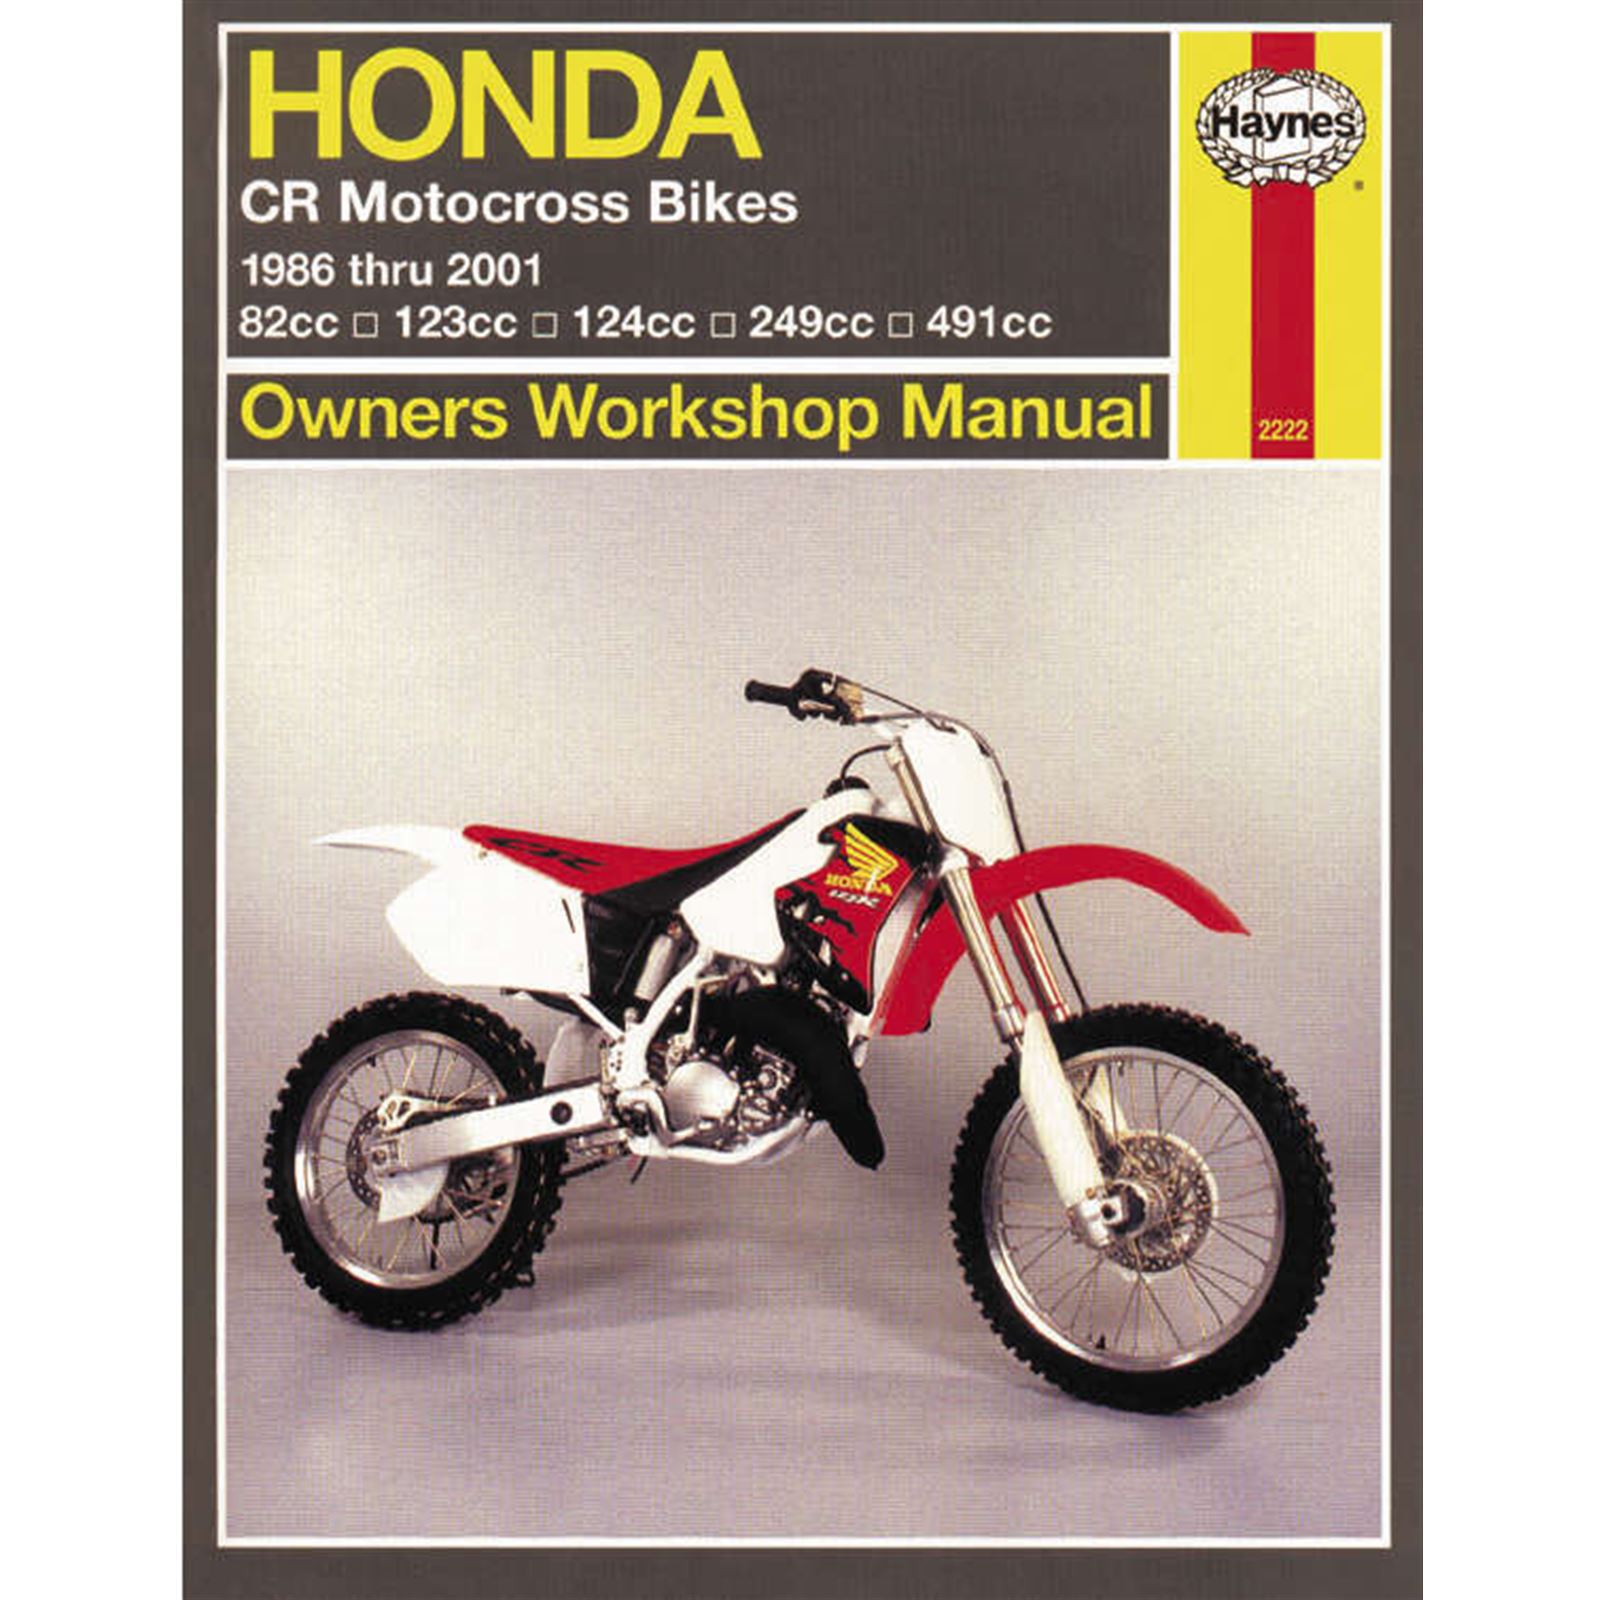 Haynes Manuals Service and Repair Manual for Honda